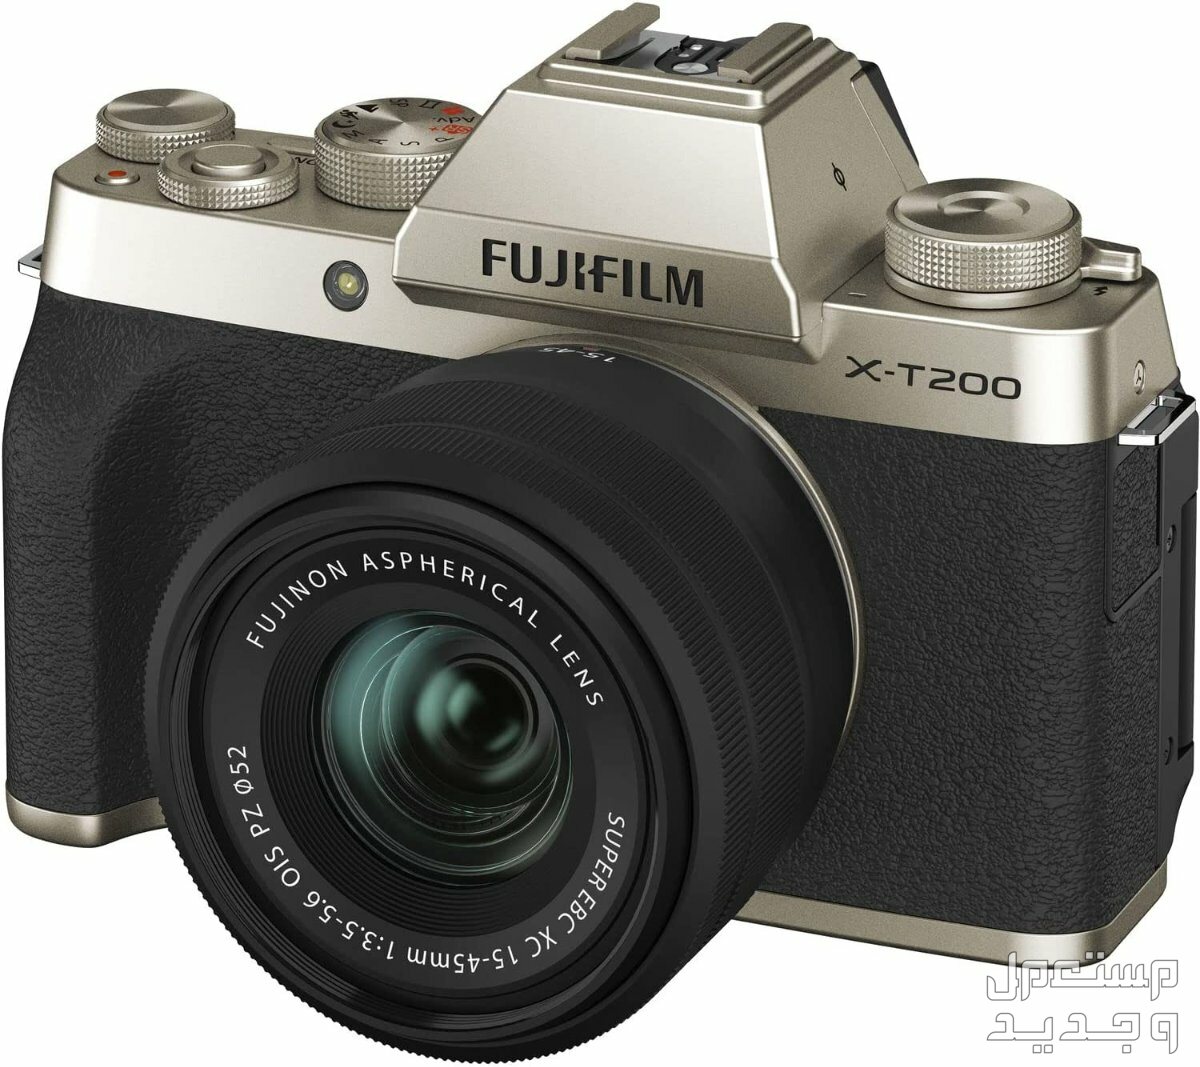 10 كاميرات تصوير ماركات عالمية بأسعار رخيصة في الكويت كاميرا Fujifilm X-T200